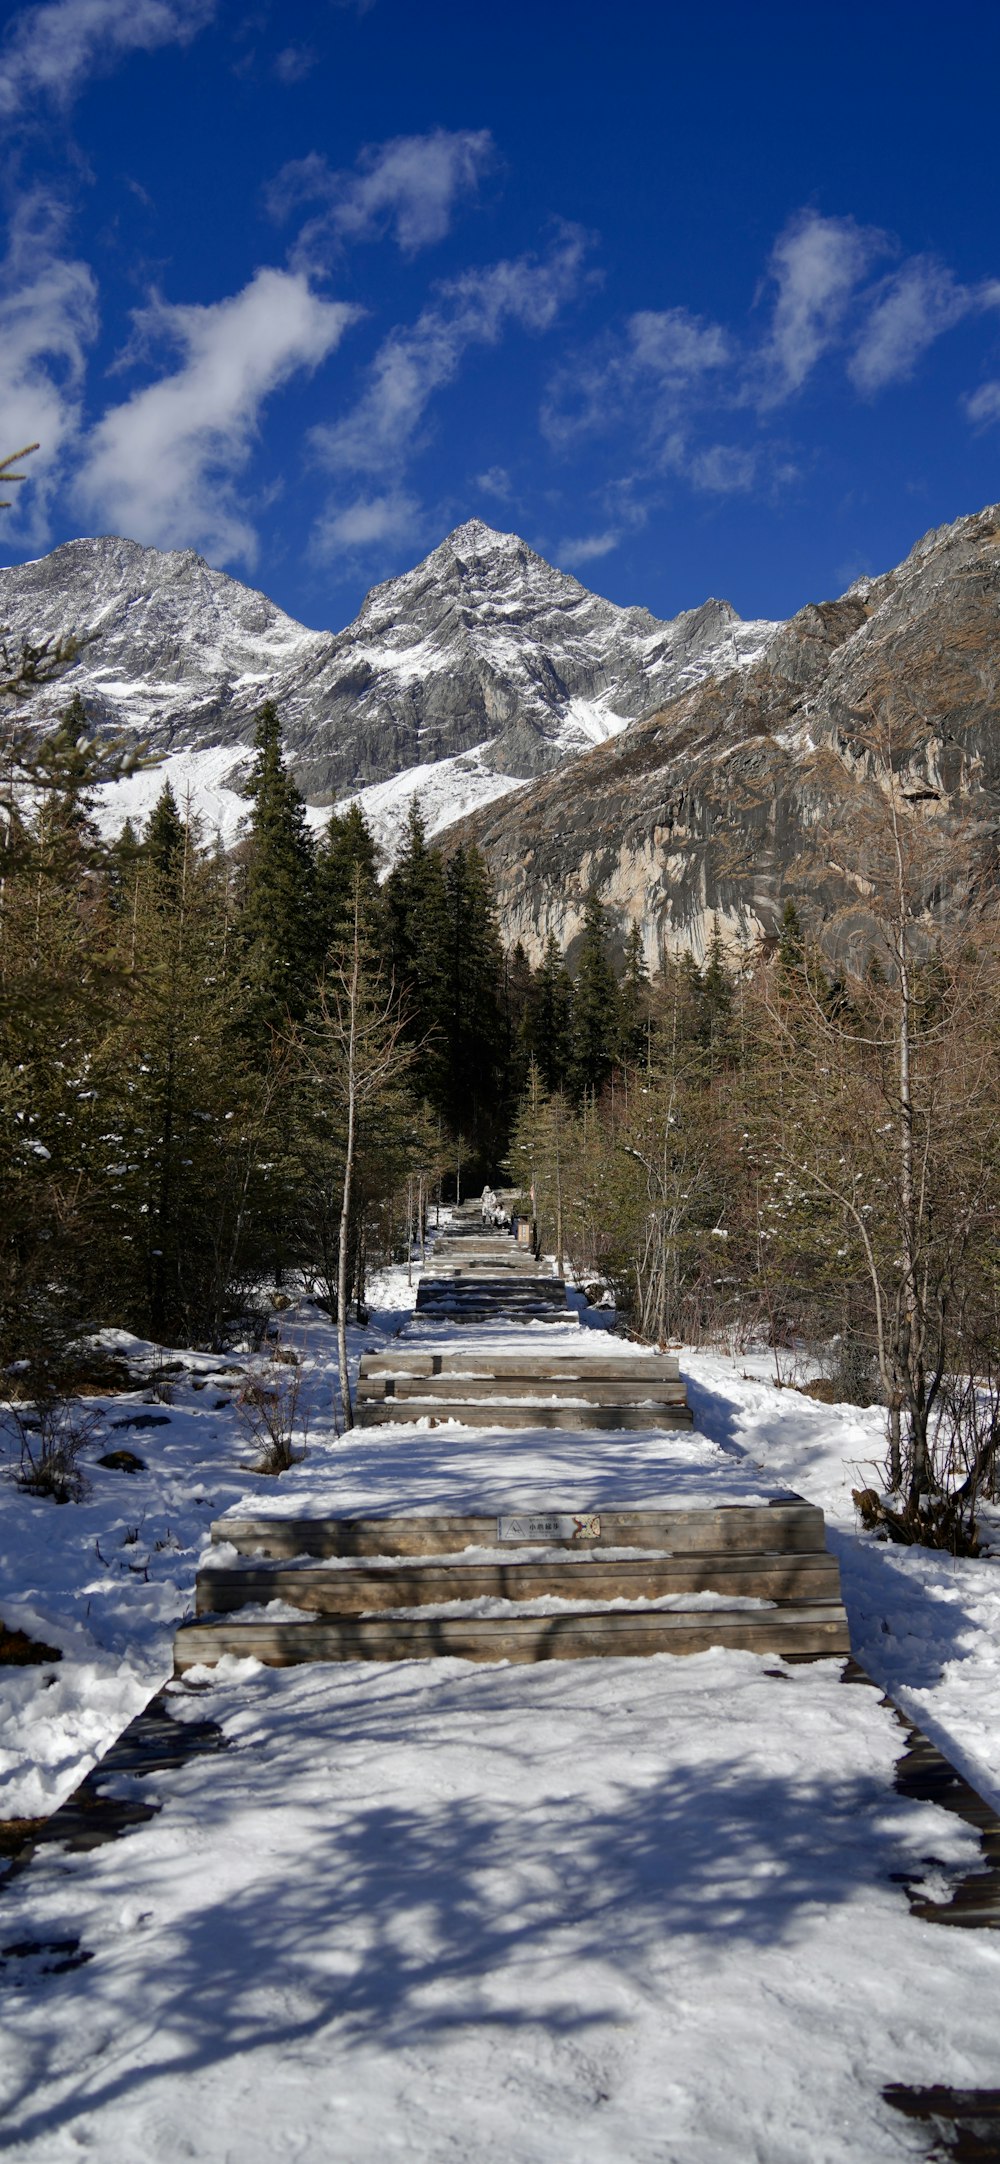 Un camino cubierto de nieve que conduce a una cadena montañosa